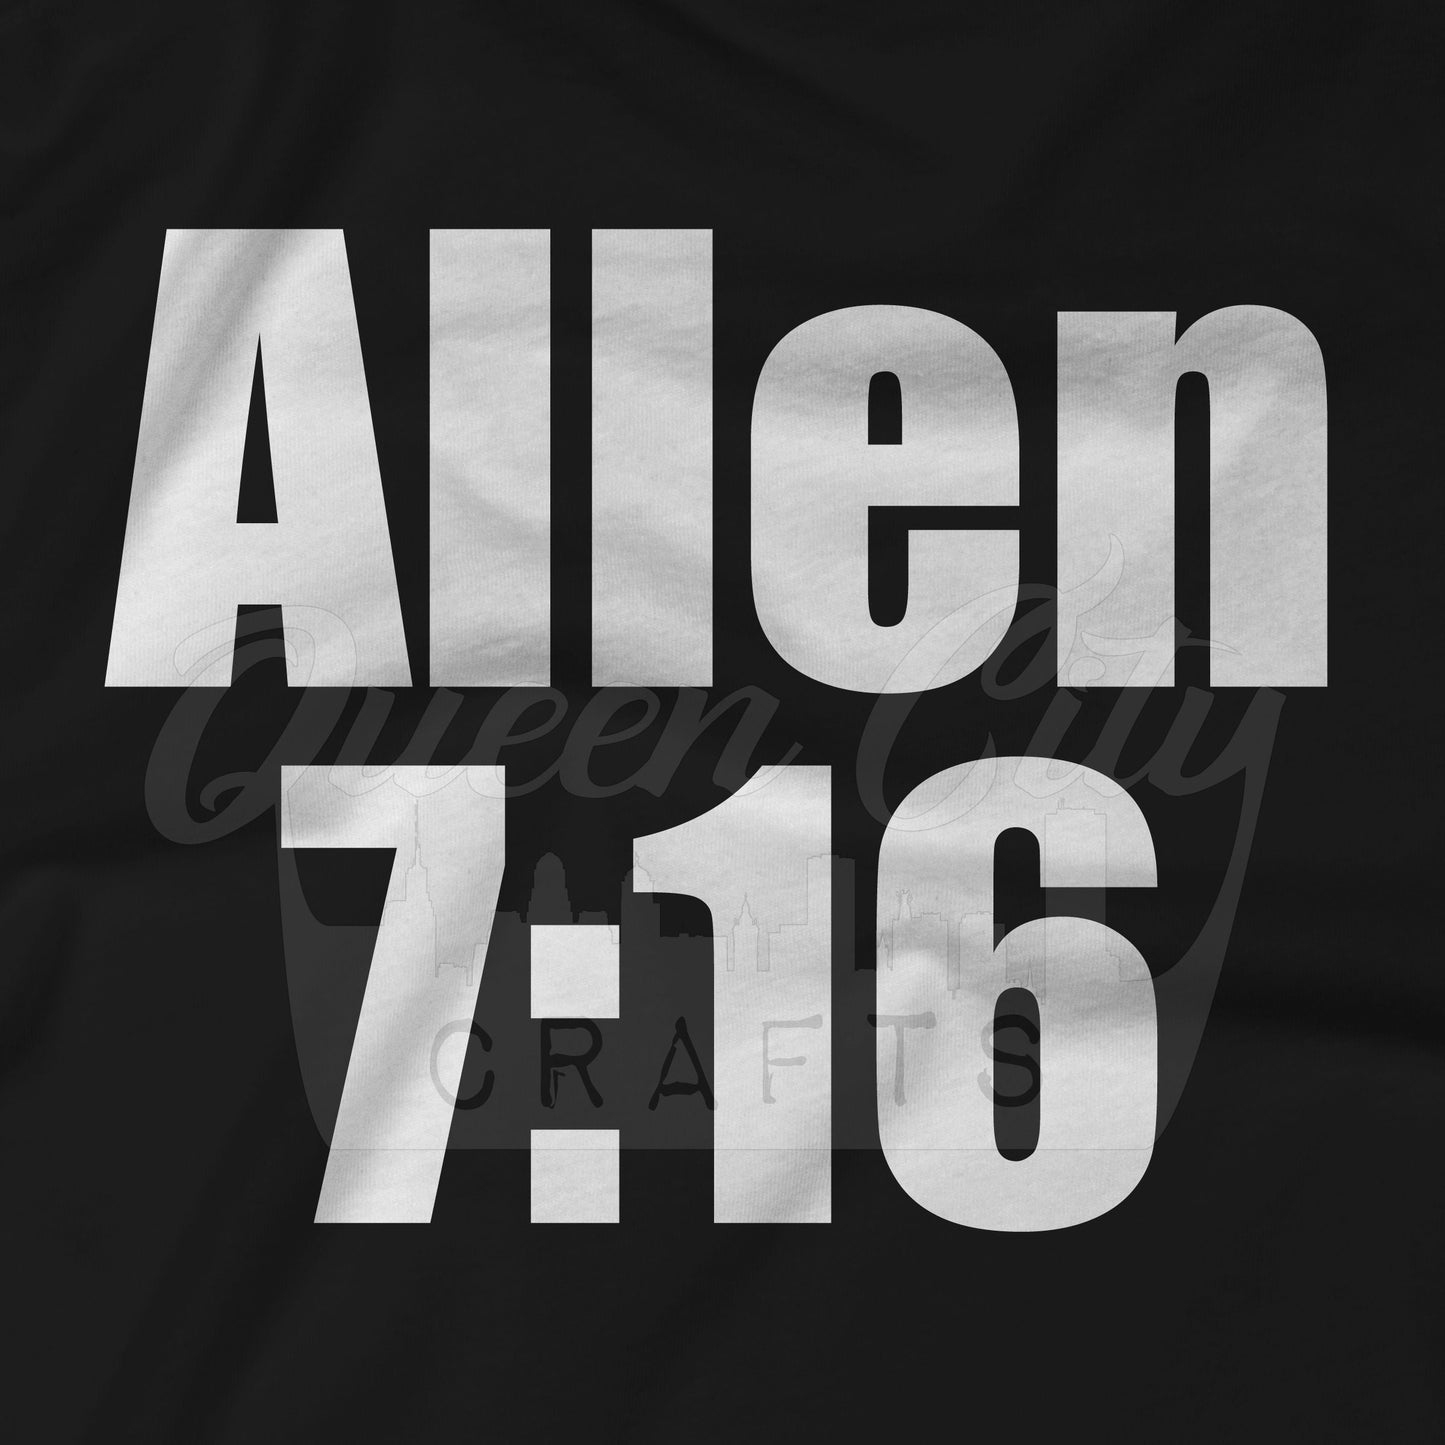 Allen 7:16 T-Shirt